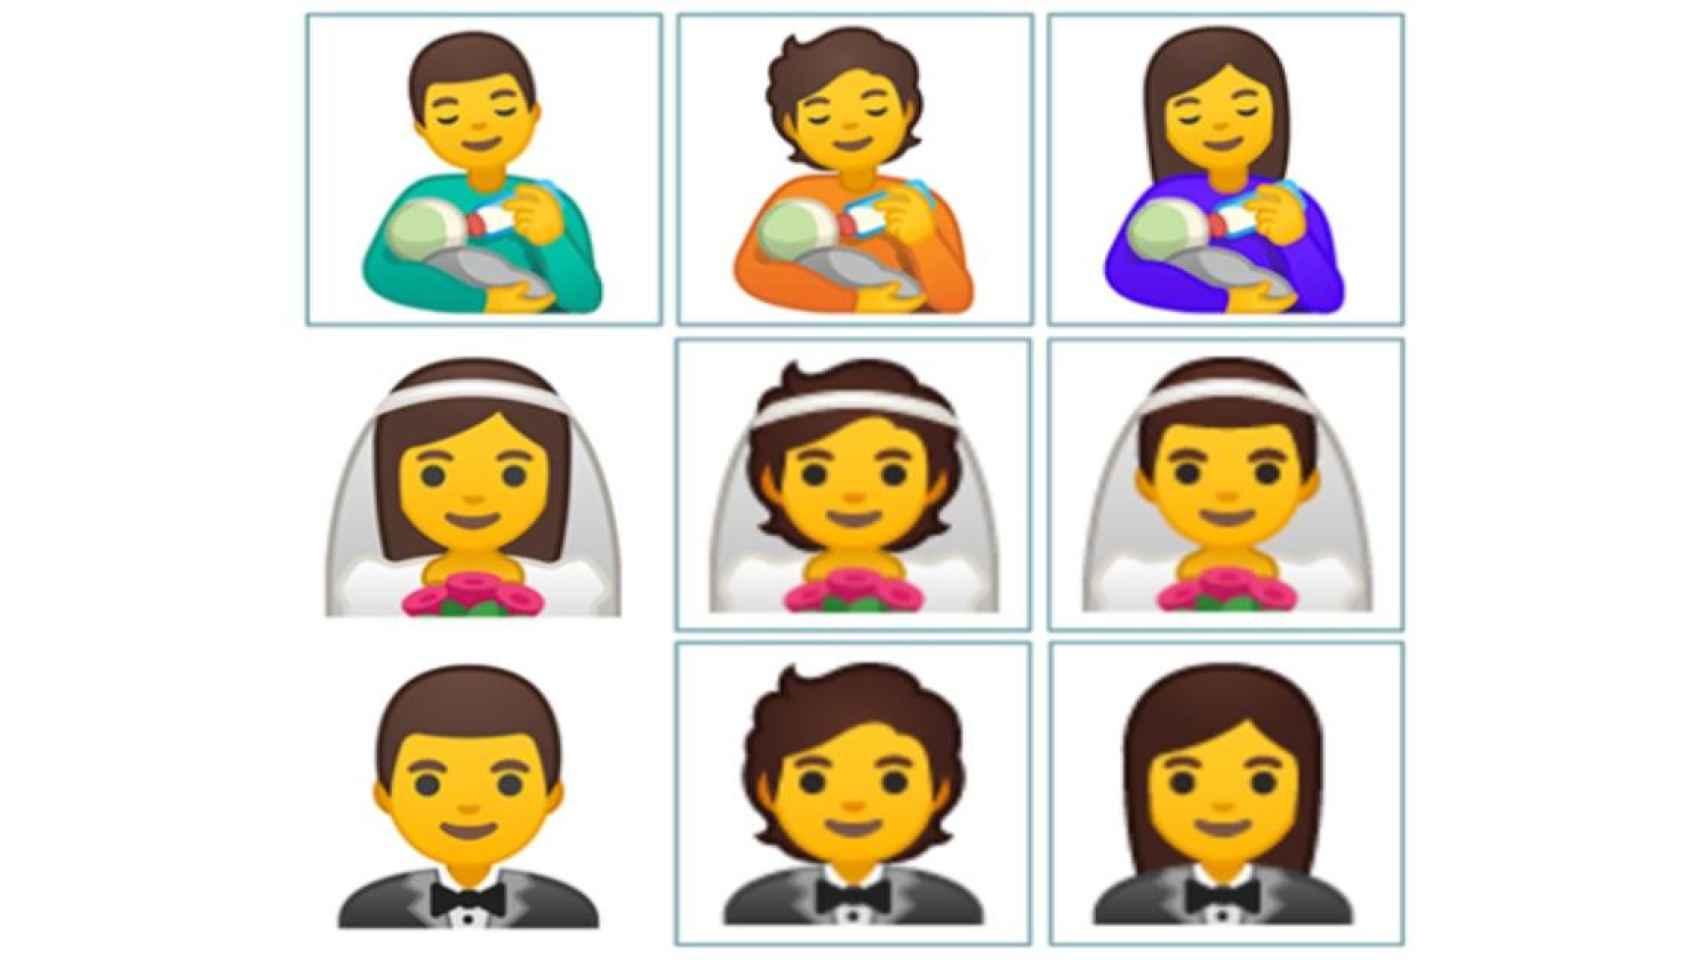 Algunos de los nuevos emojis que llegarán en 2020 / UNICODE